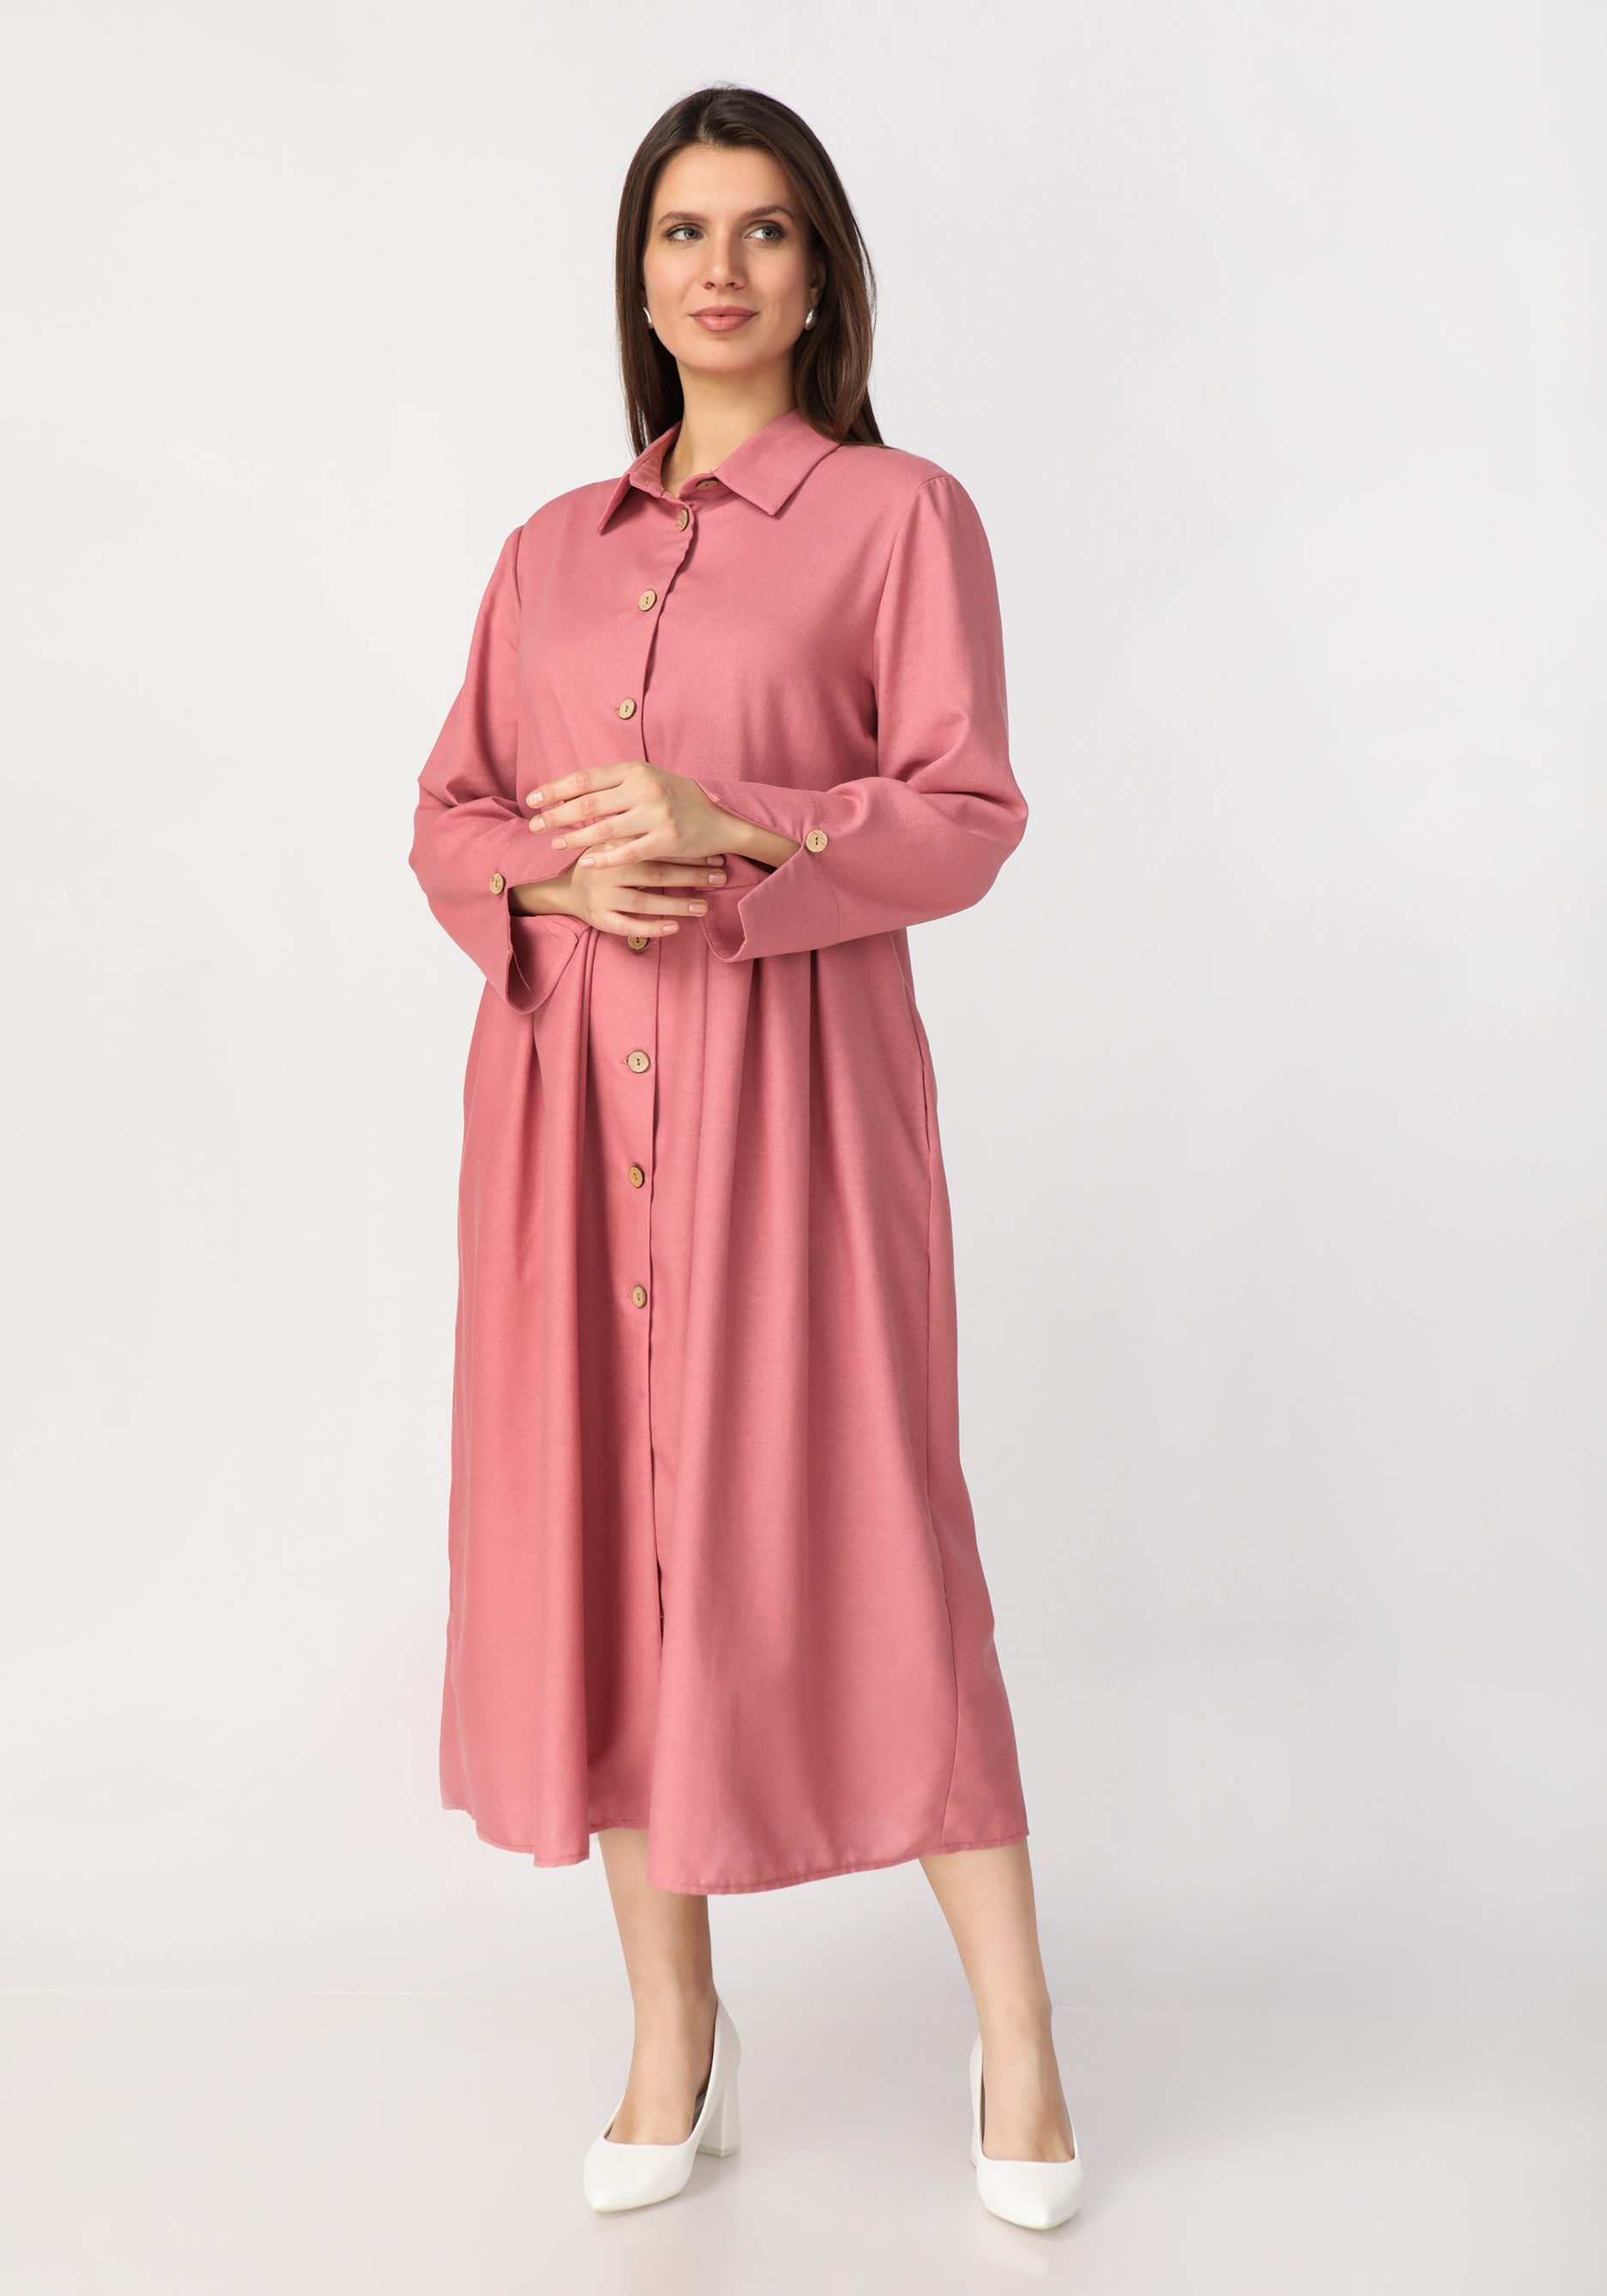 Платье-рубашка из льняной ткани Frida, цвет розовый, размер 58-60 - фото 6